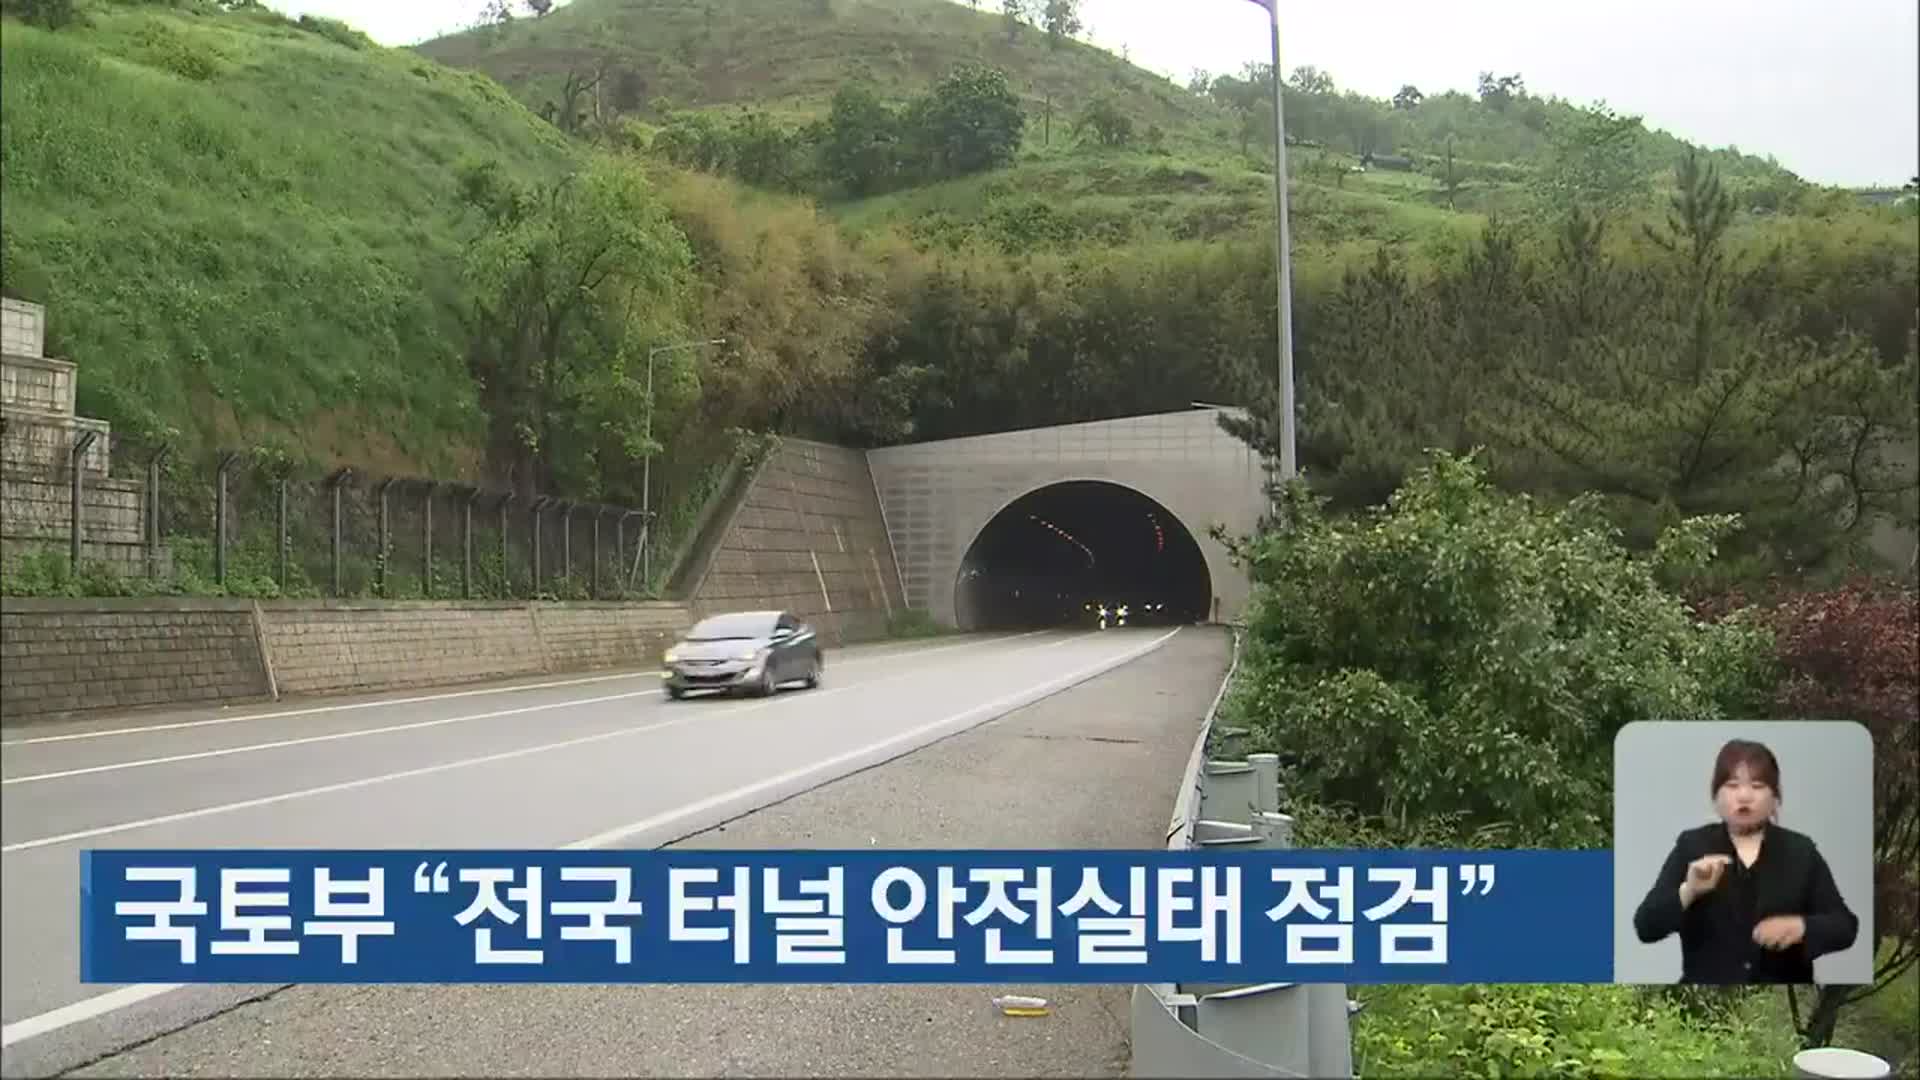 국토부 “전국 터널 안전실태 점검”